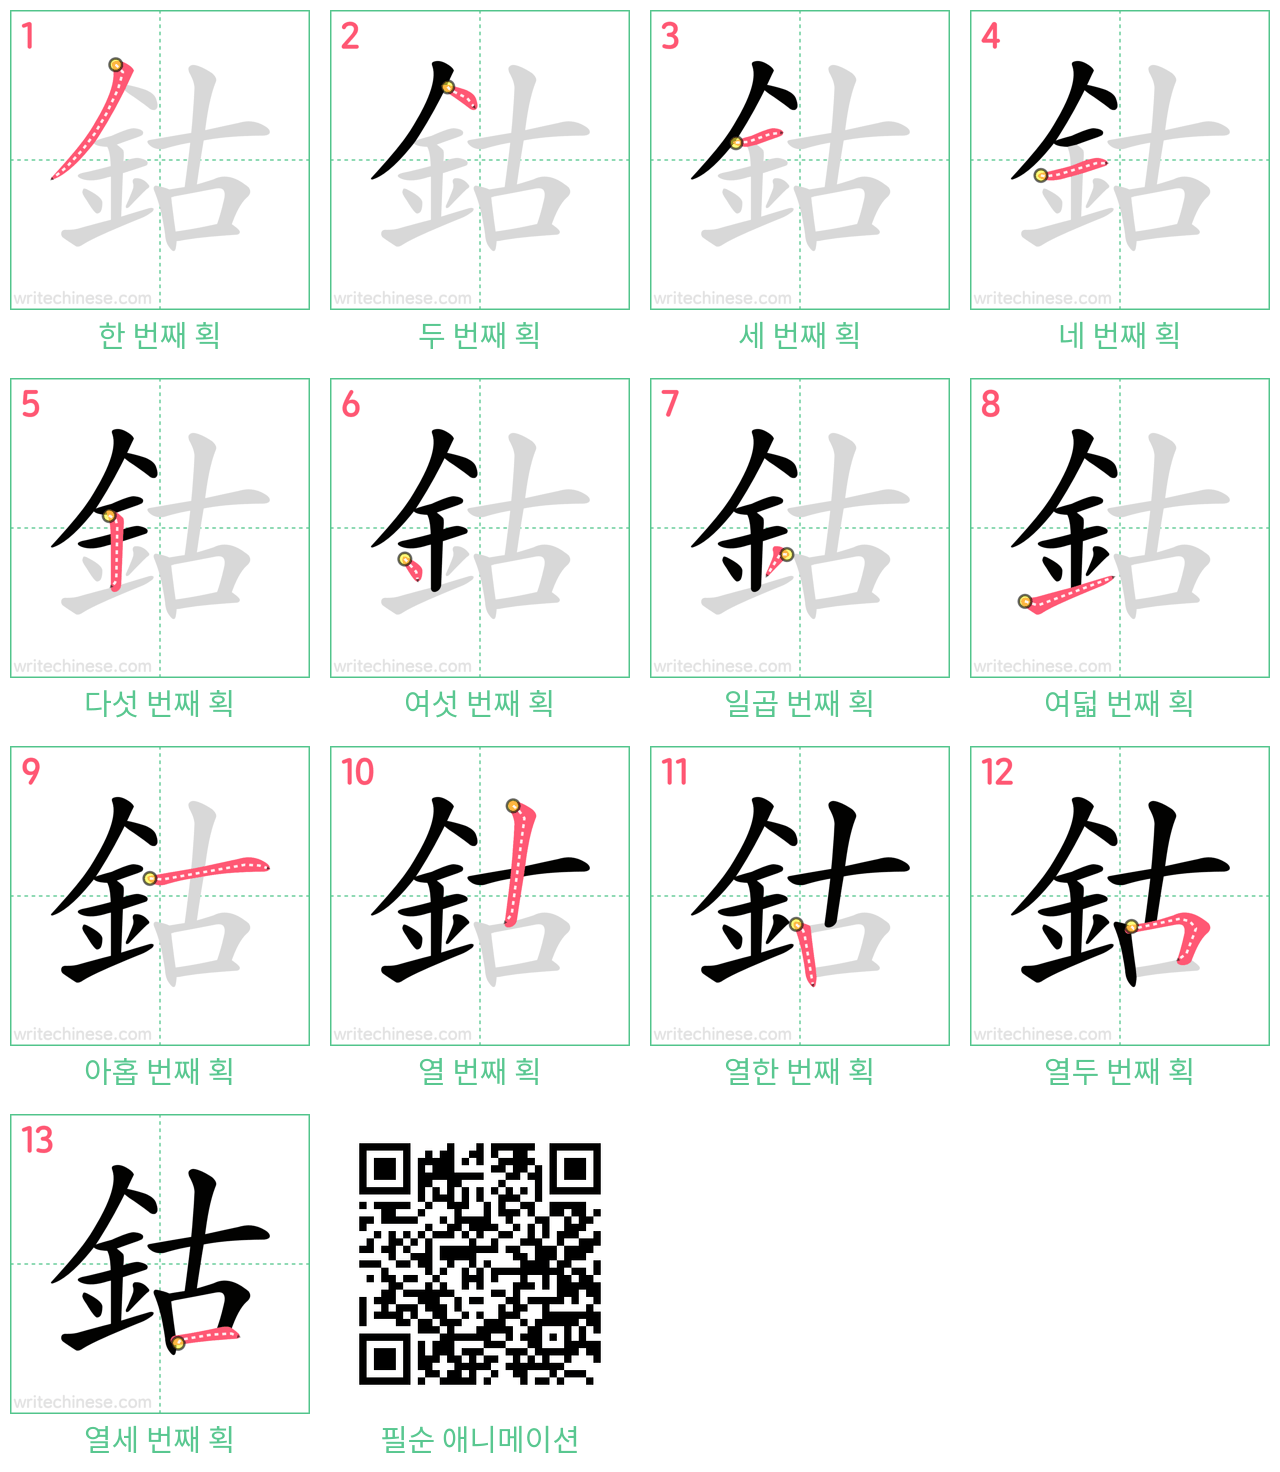 鈷 step-by-step stroke order diagrams